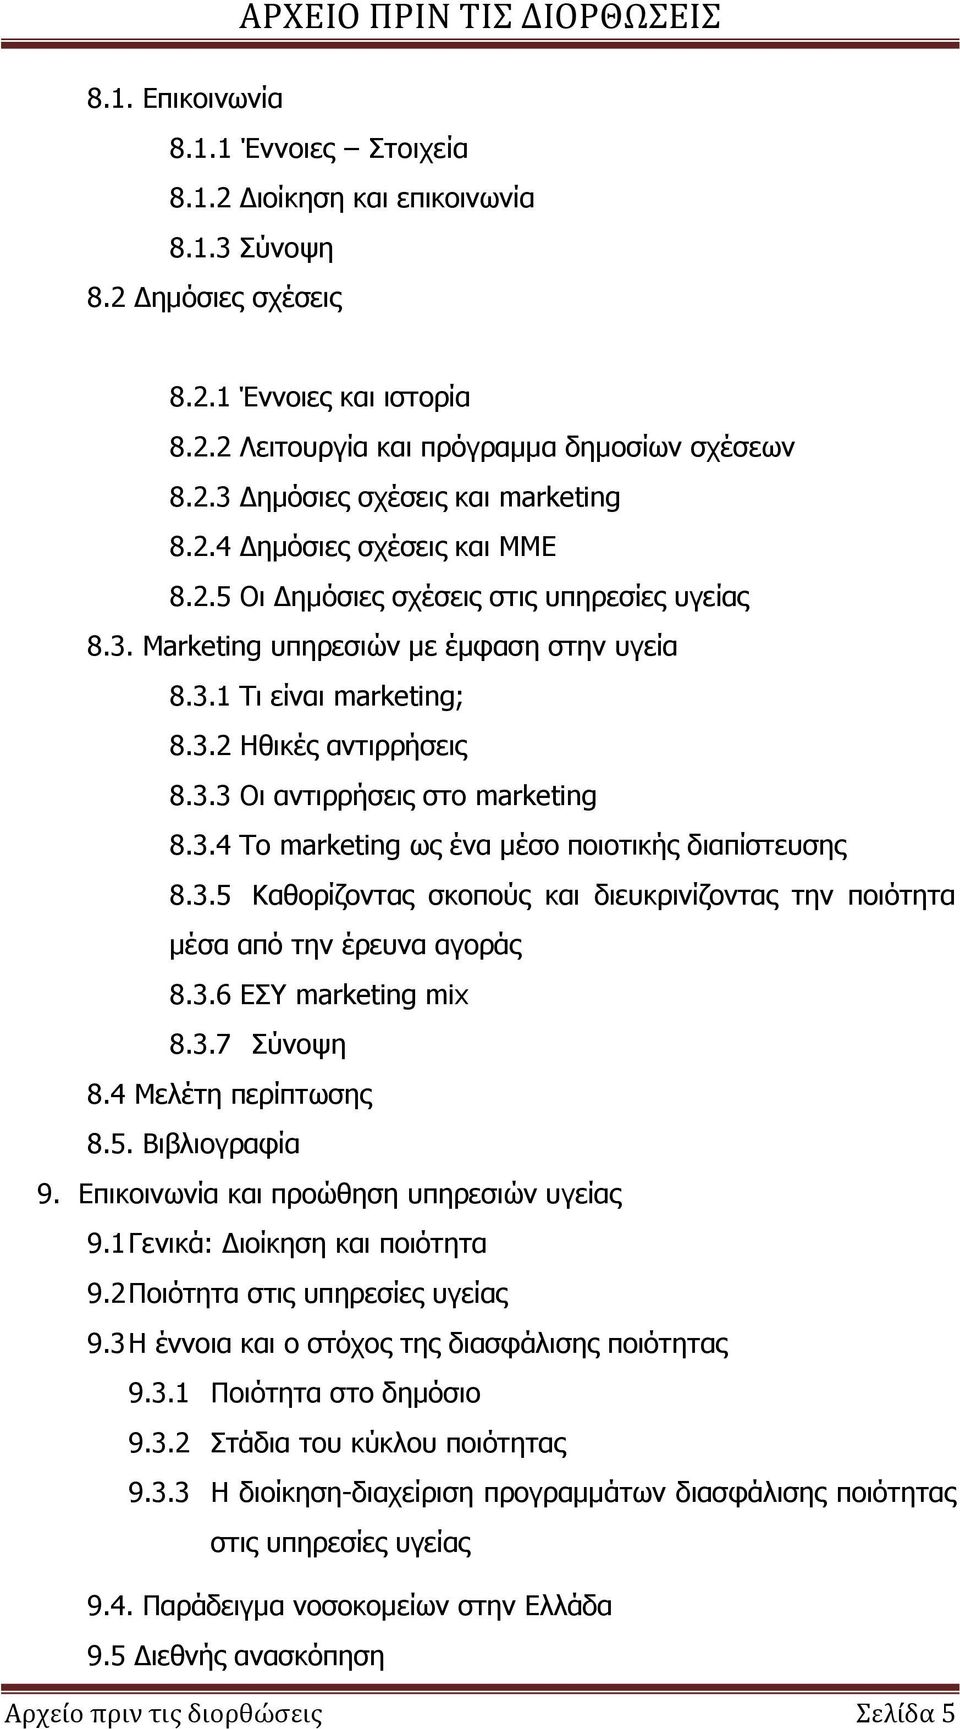 3.4 Το marketing ως ένα μέσο ποιοτικής διαπίστευσης 8.3.5 Καθορίζοντας σκοπούς και διευκρινίζοντας την ποιότητα μέσα από την έρευνα αγοράς 8.3.6 ΕΣΥ marketing mix 8.3.7 Σύνοψη 8.4 Μελέτη περίπτωσης 8.